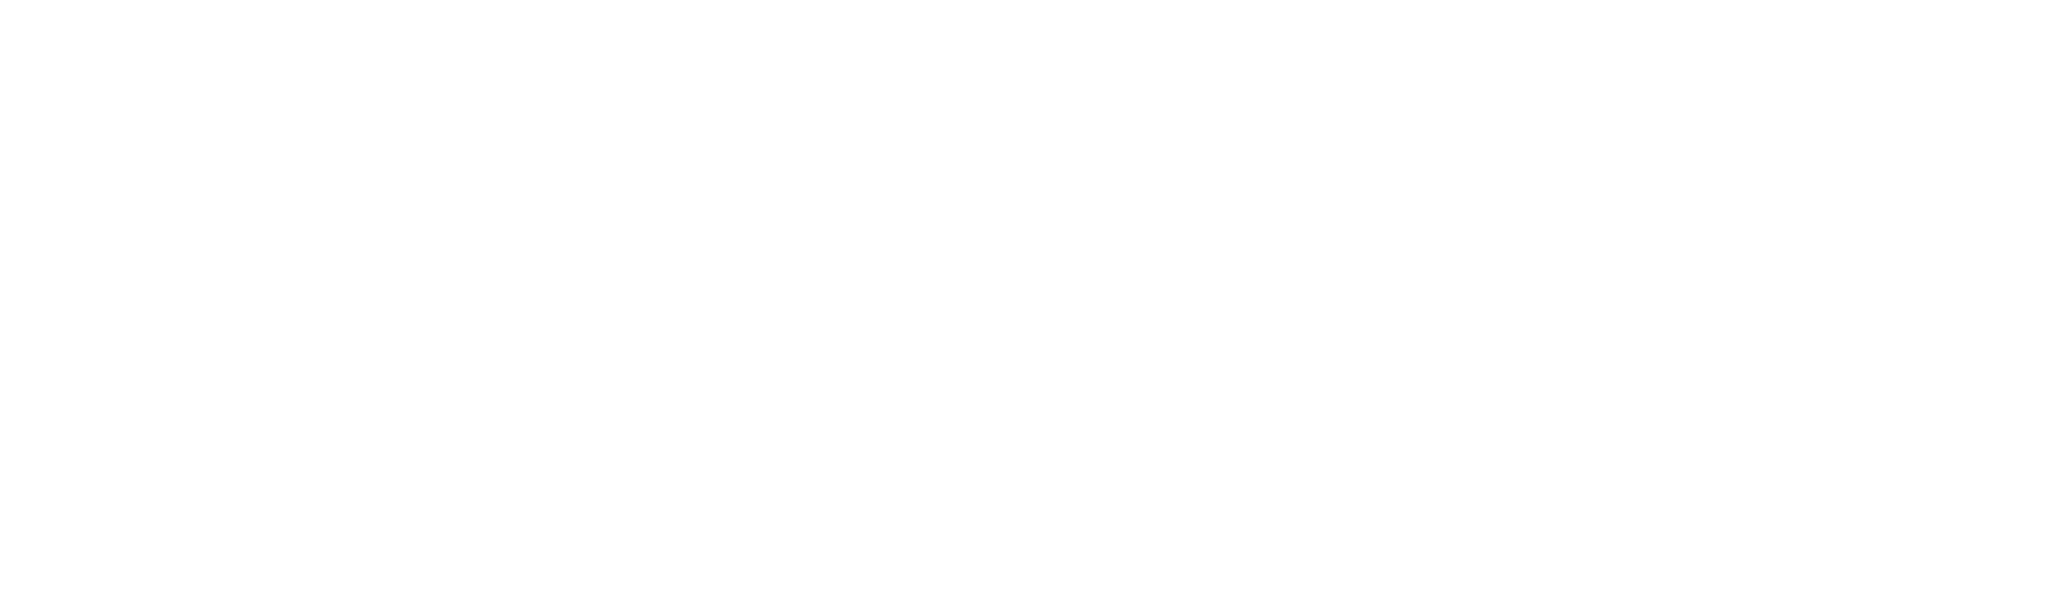 Octrick.ink